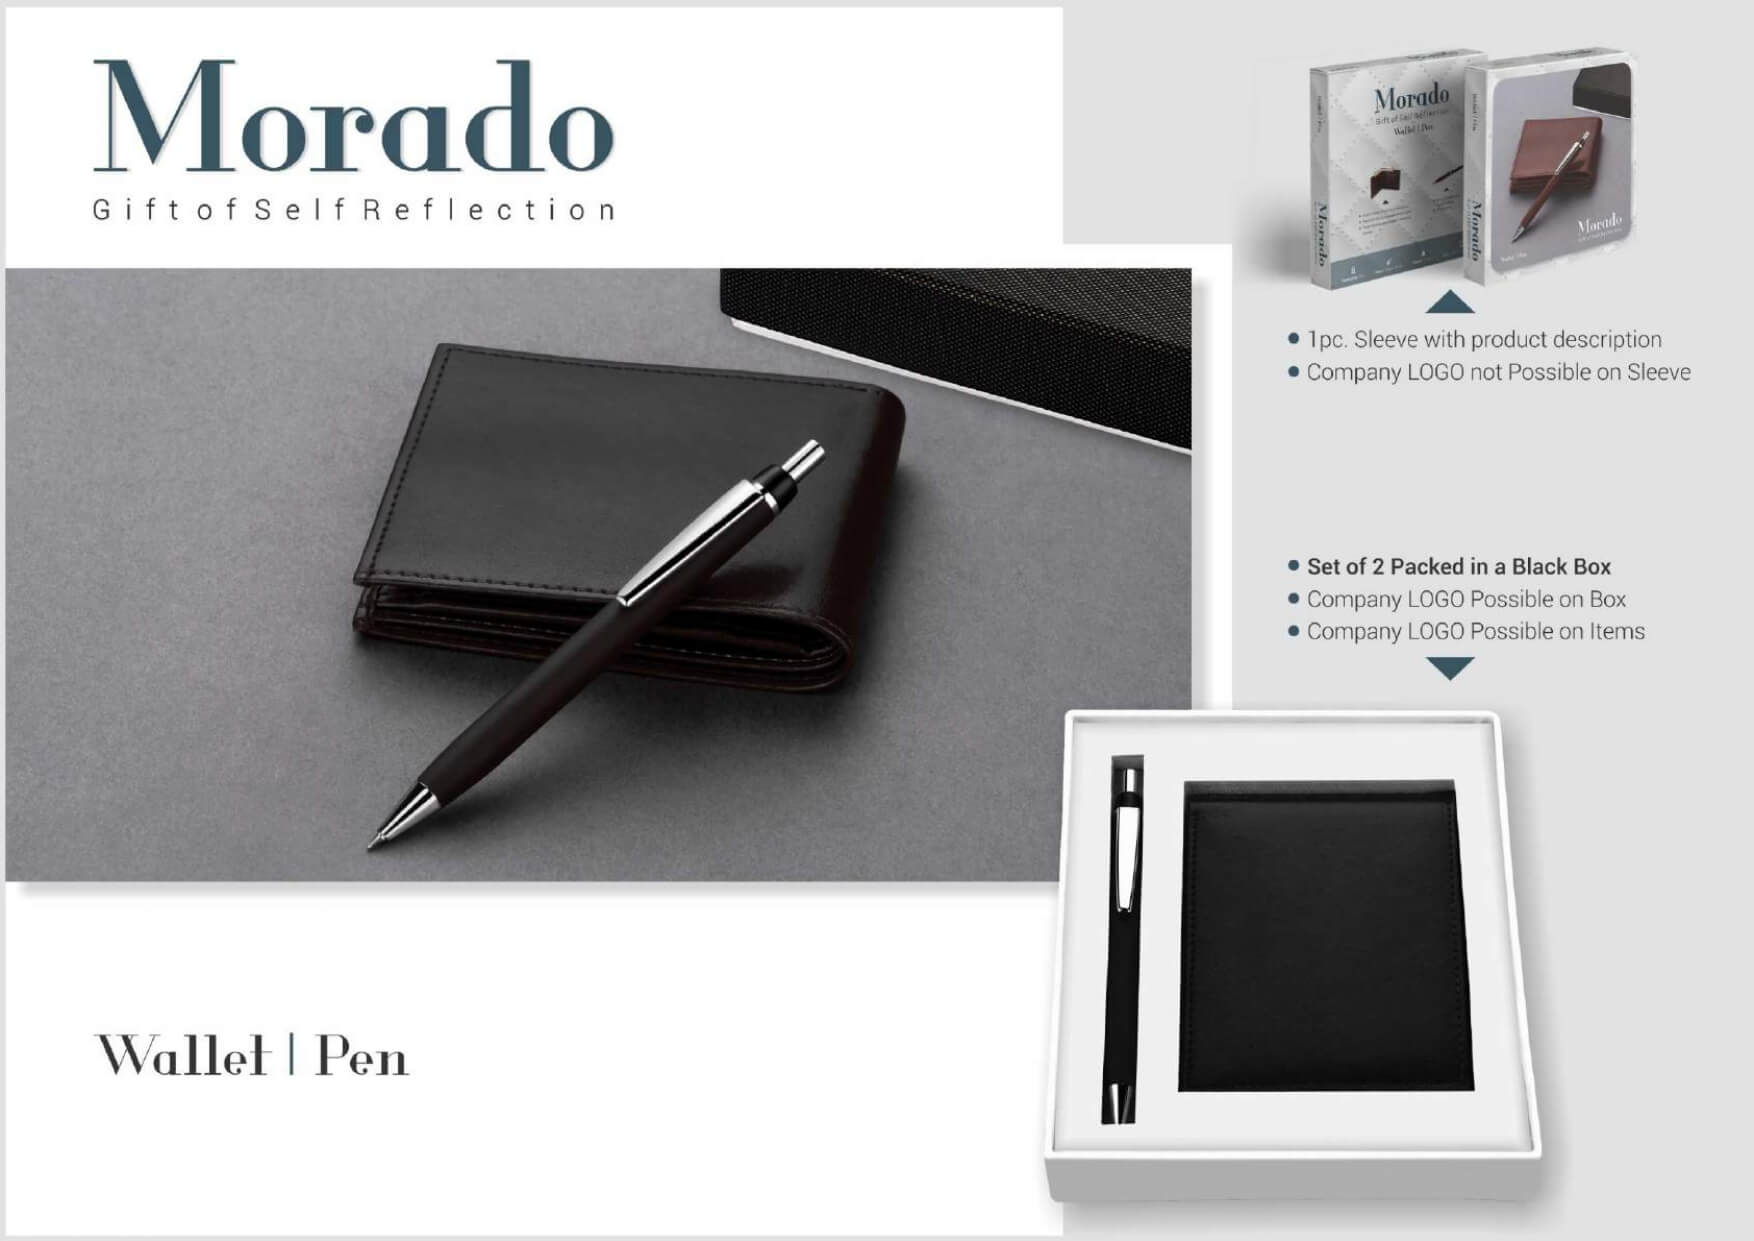 Wallet and Pen Set 2 in 1 Morado